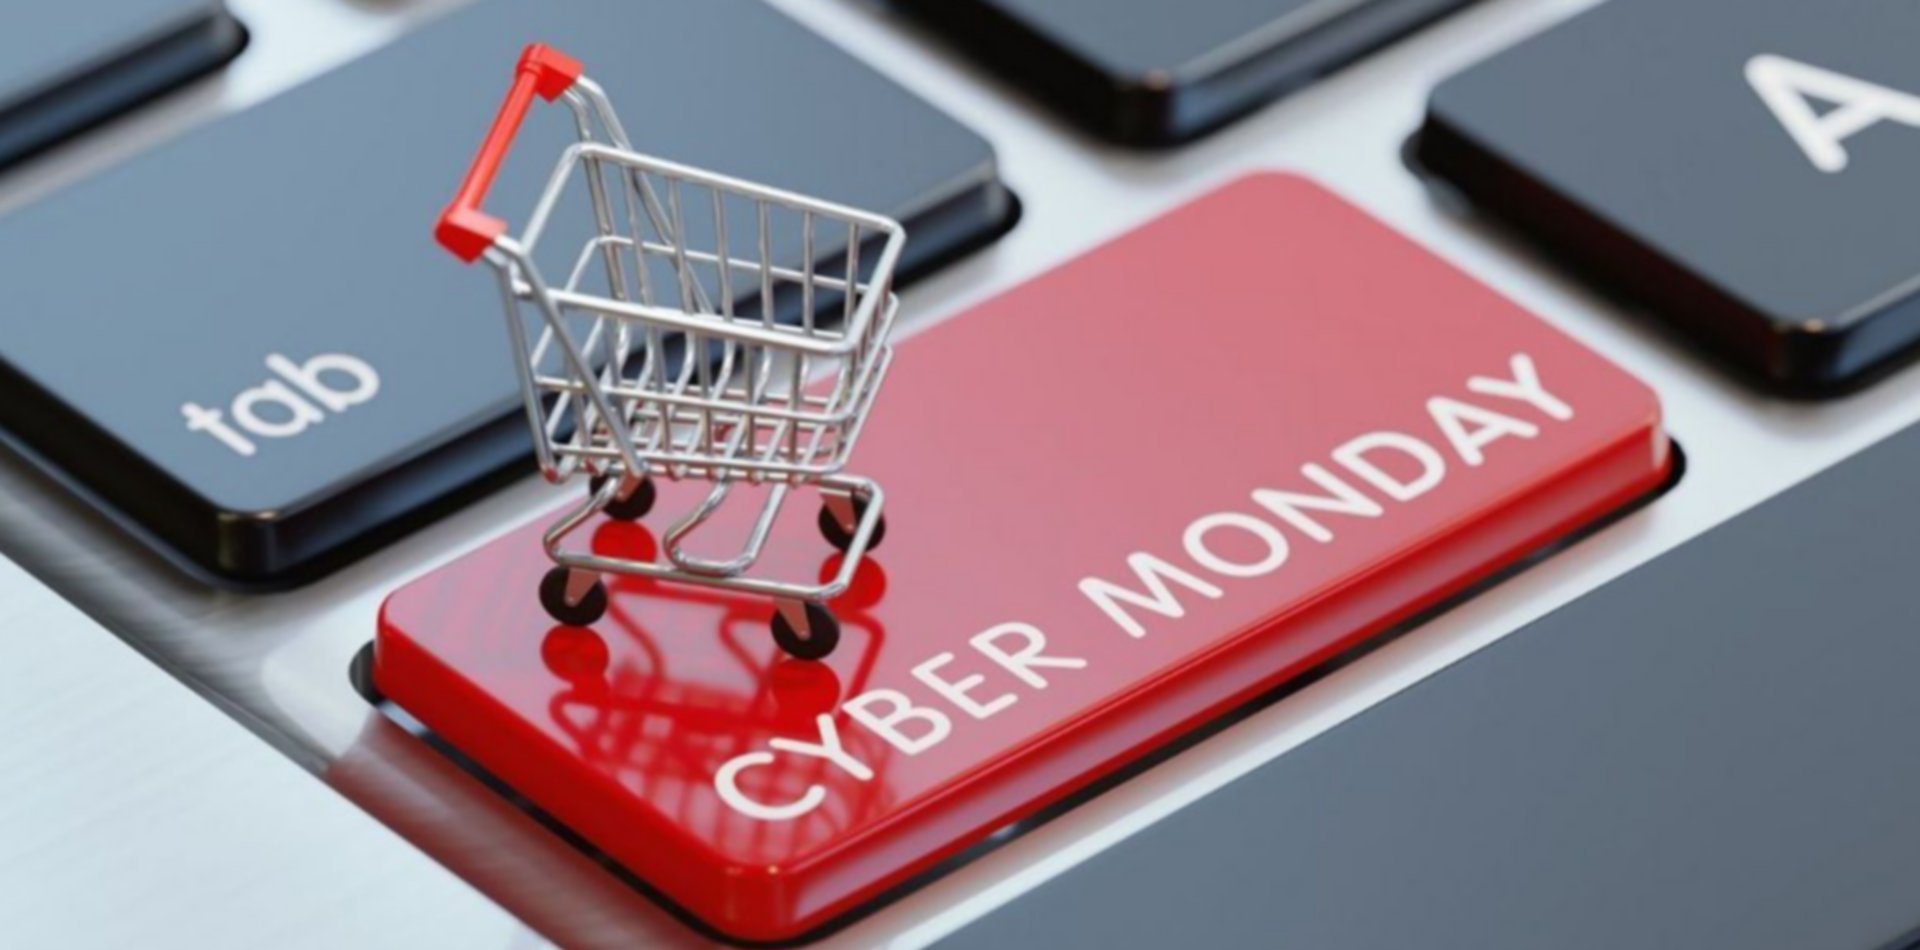 ¿Qué es lo más comprado por los chilenos en este Cyber Monday?